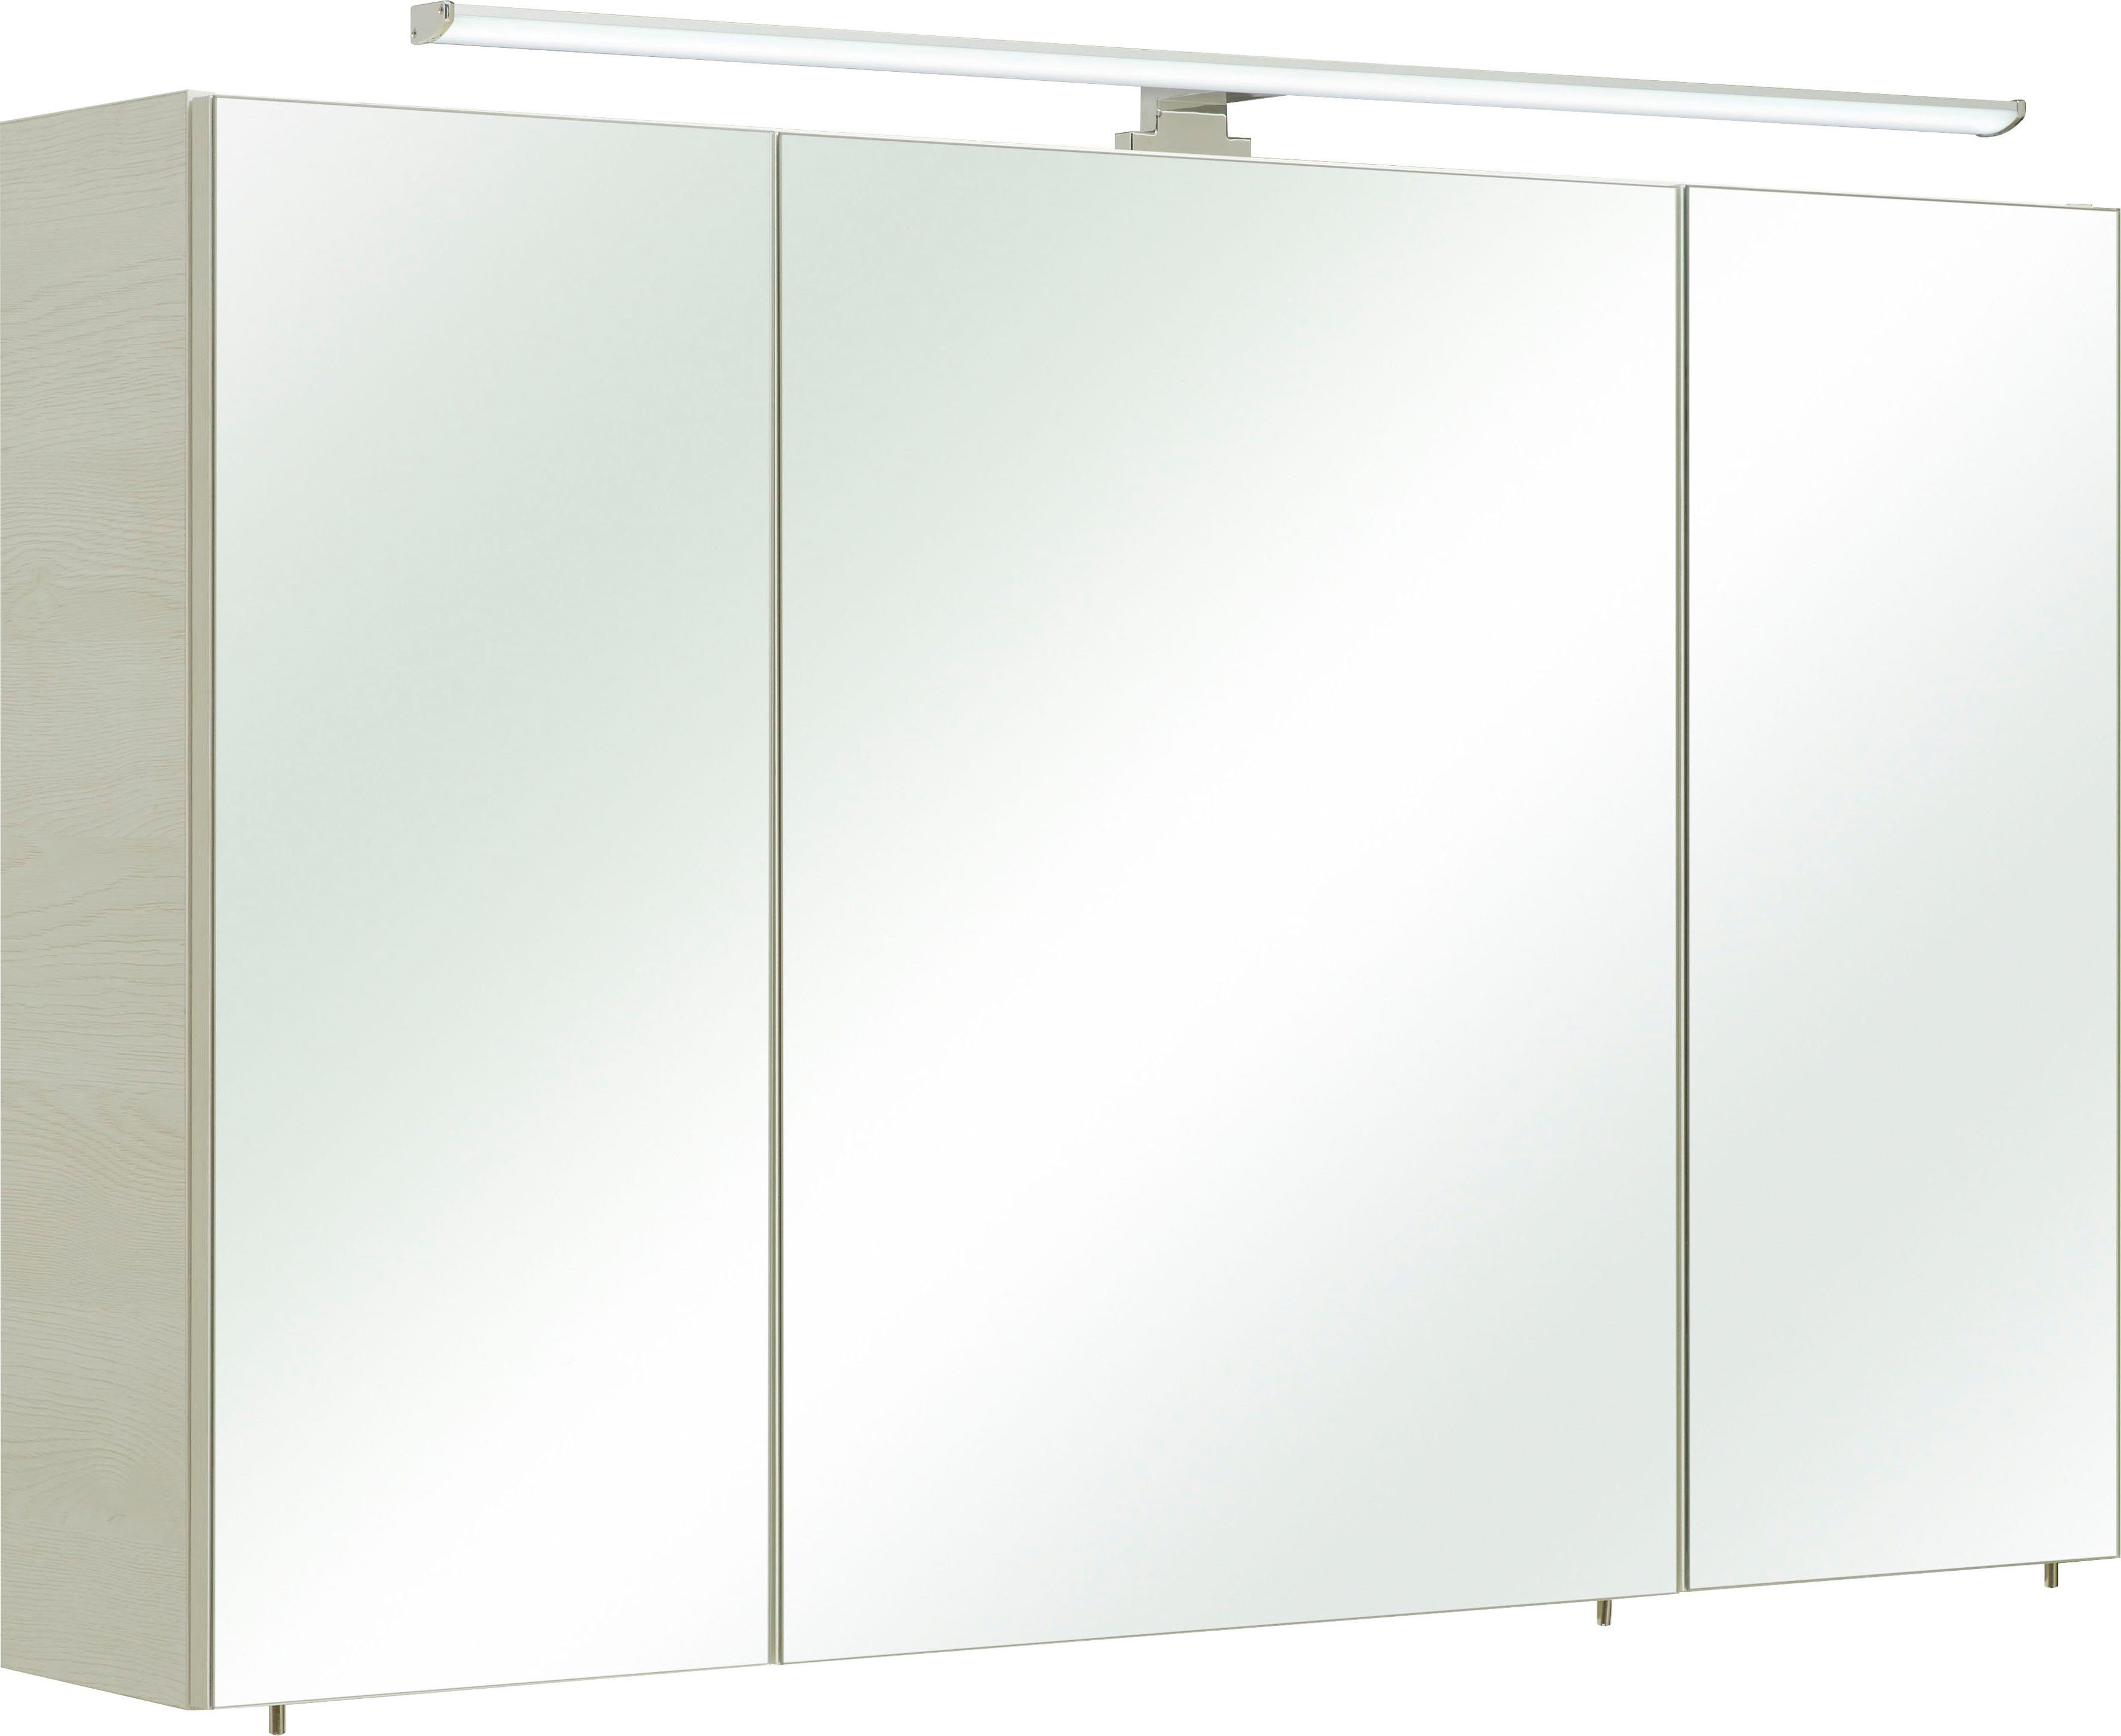 Saphir Spiegelkast Quickset 936 Breedte 110 cm, 3-deurs, ledverlichting, schakelaar-/stekkerdoos